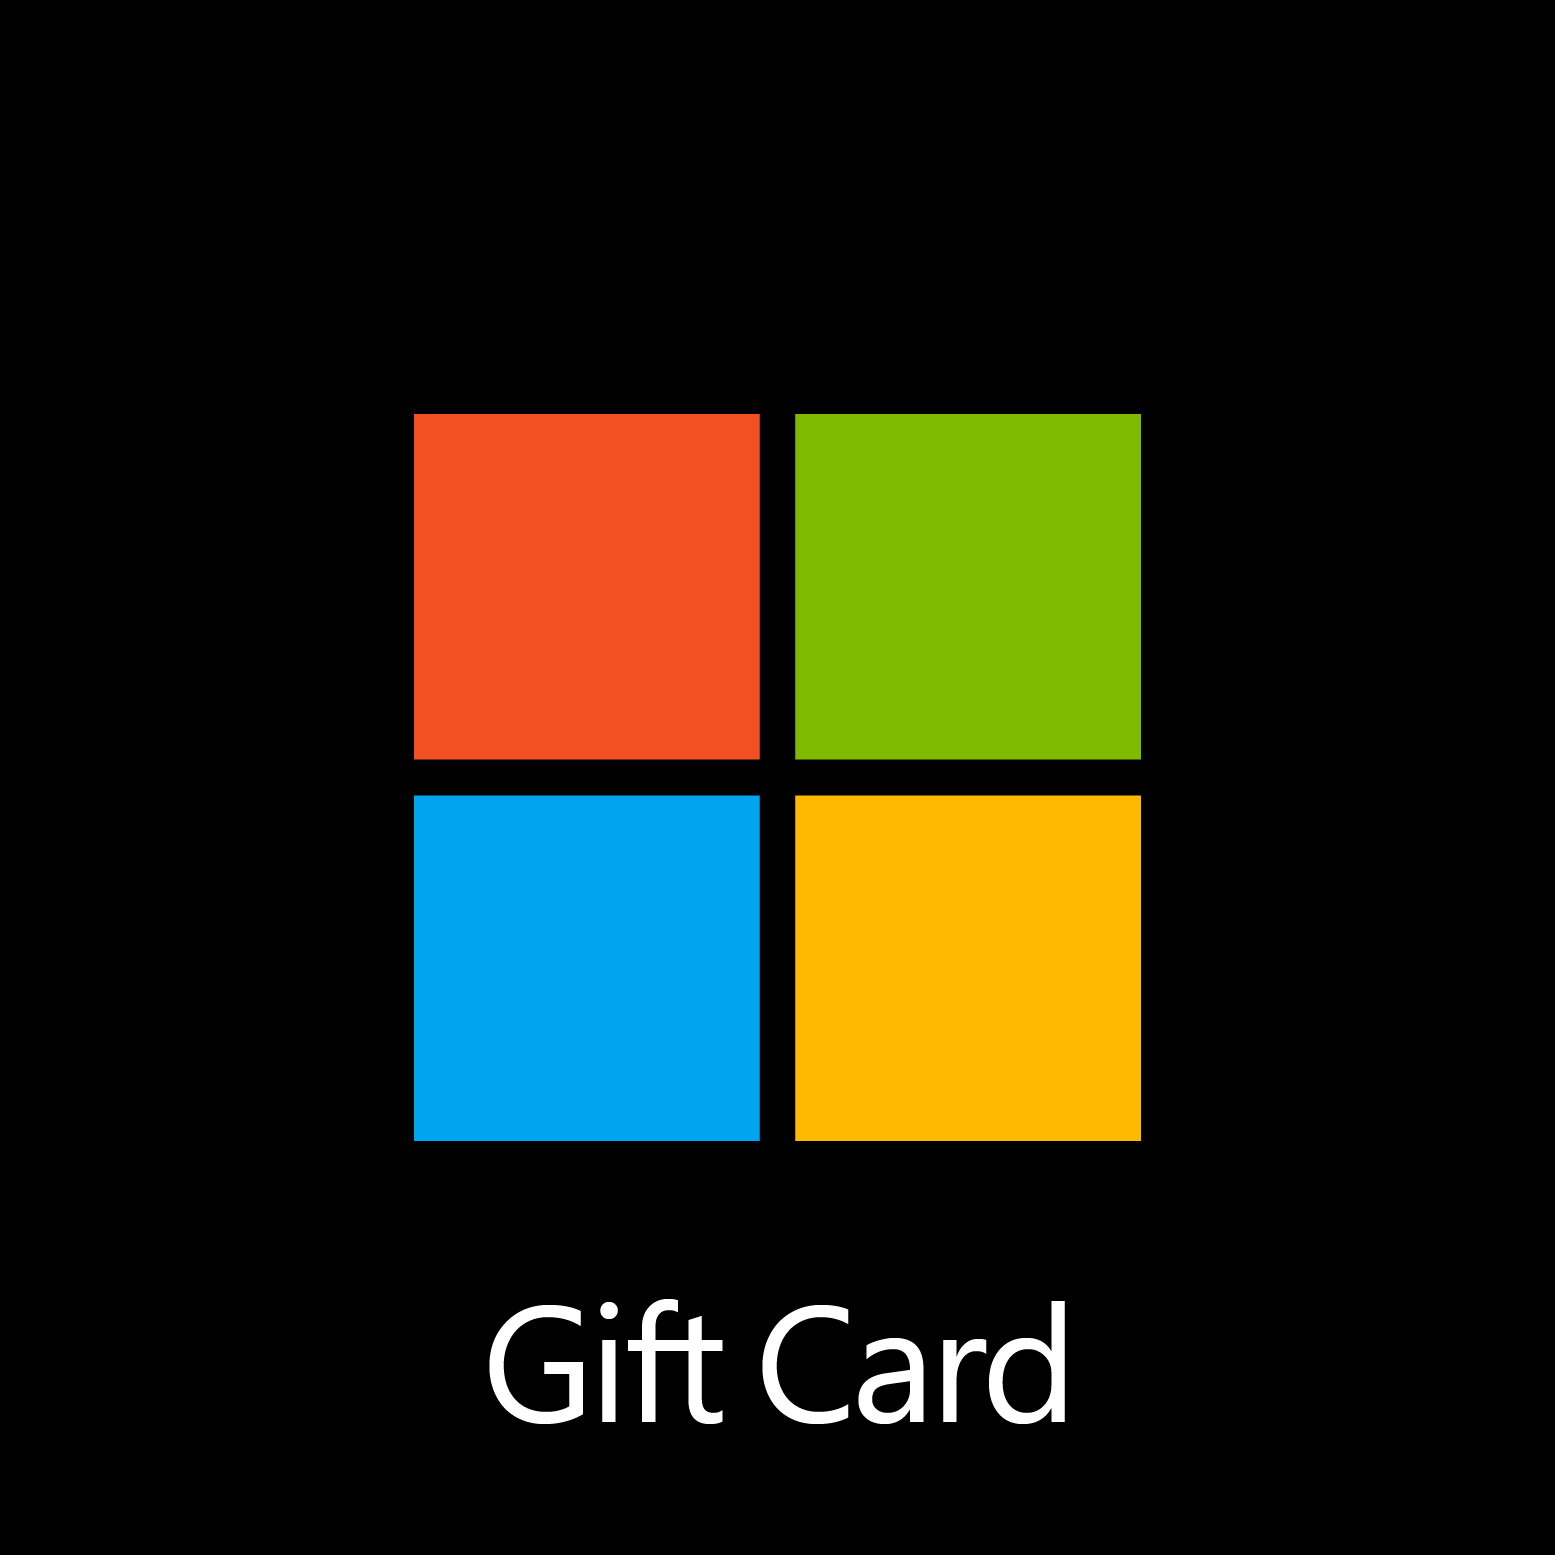 Microsoft Gift Card - Digital Code: £15.00